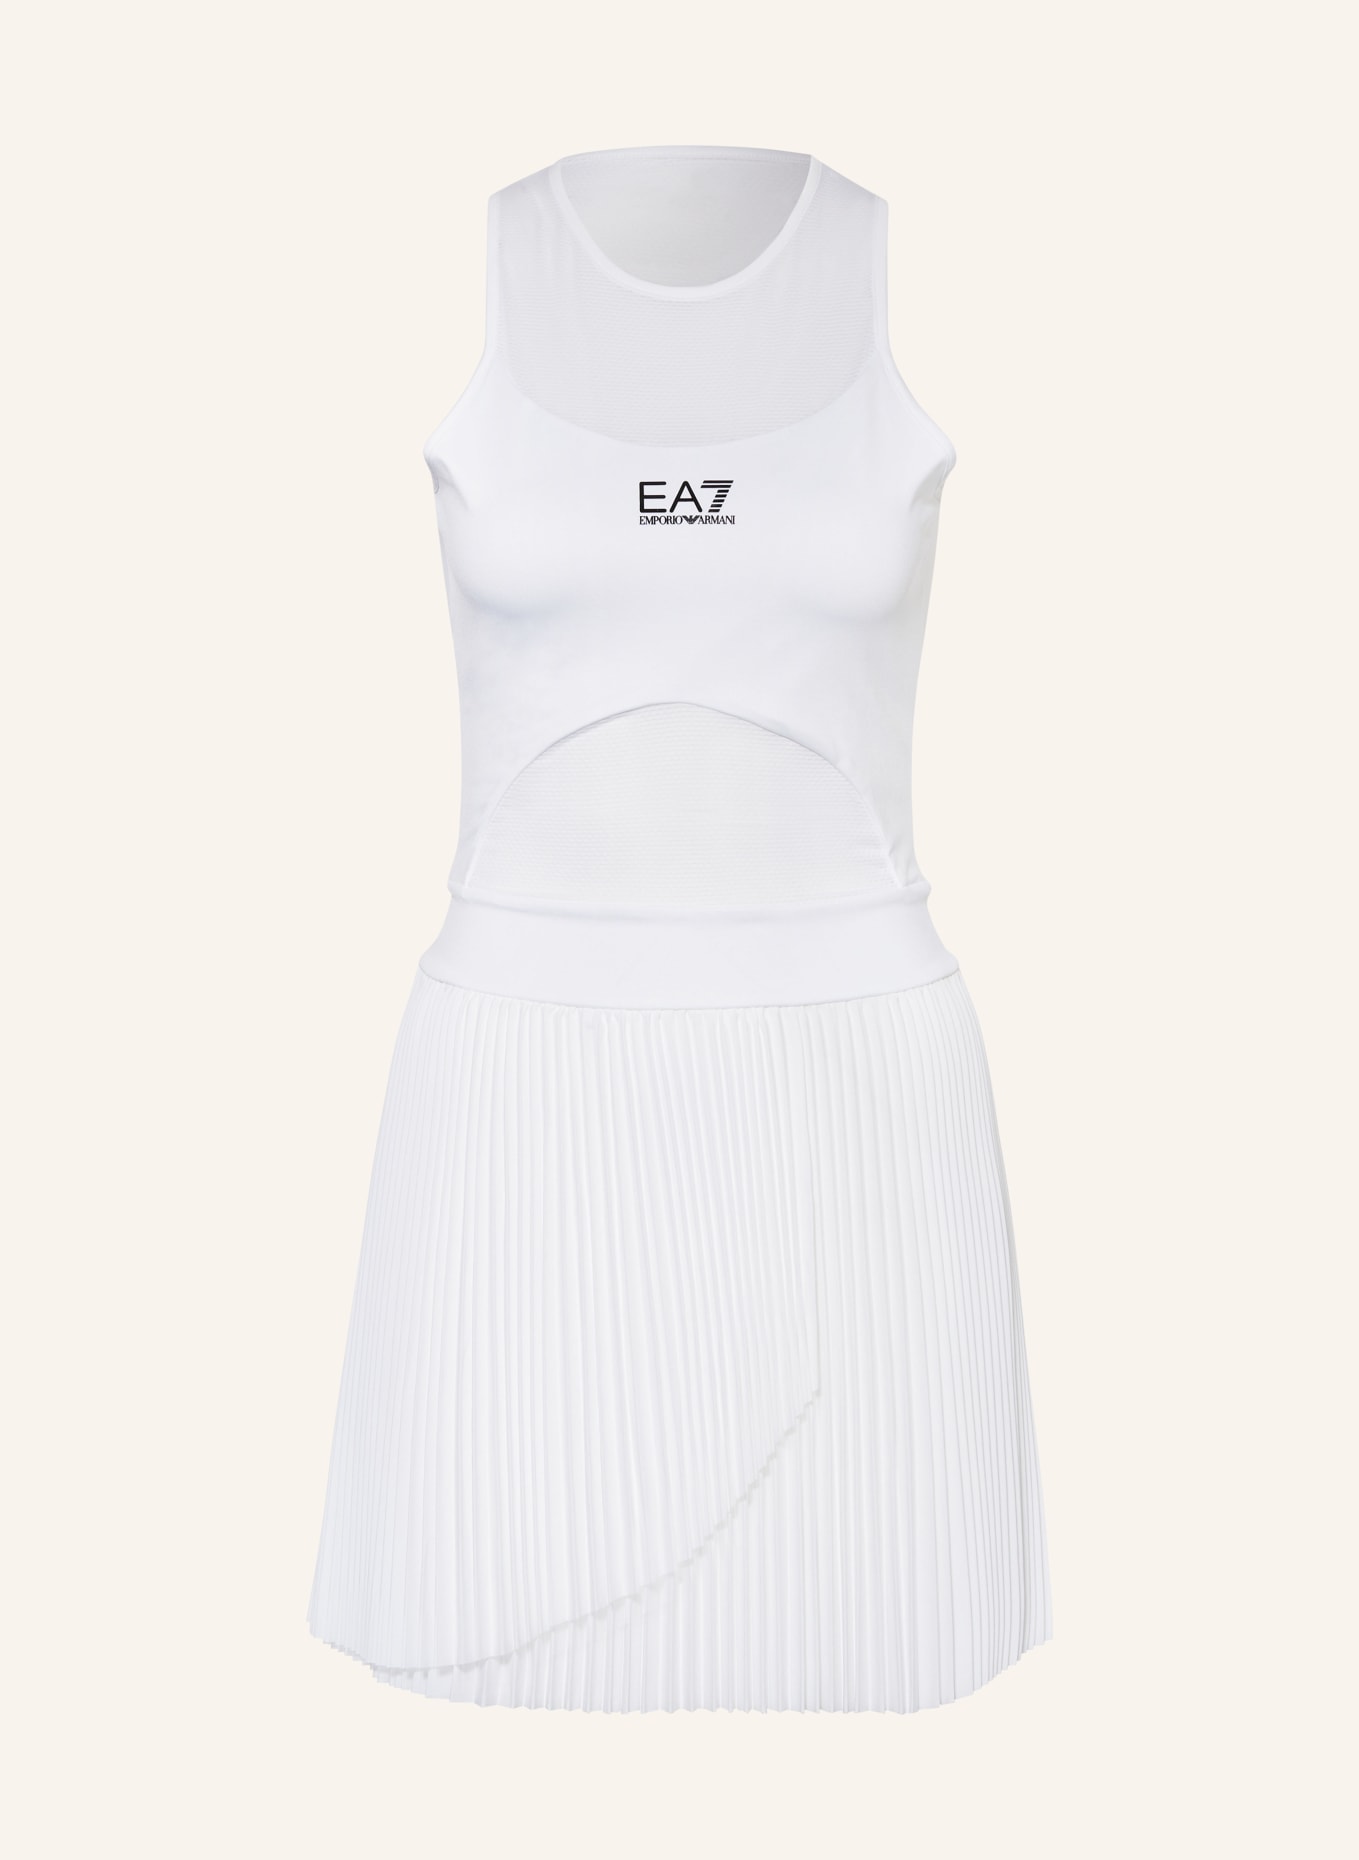 EA7 EMPORIO ARMANI Tennis dress, Color: WHITE (Image 1)